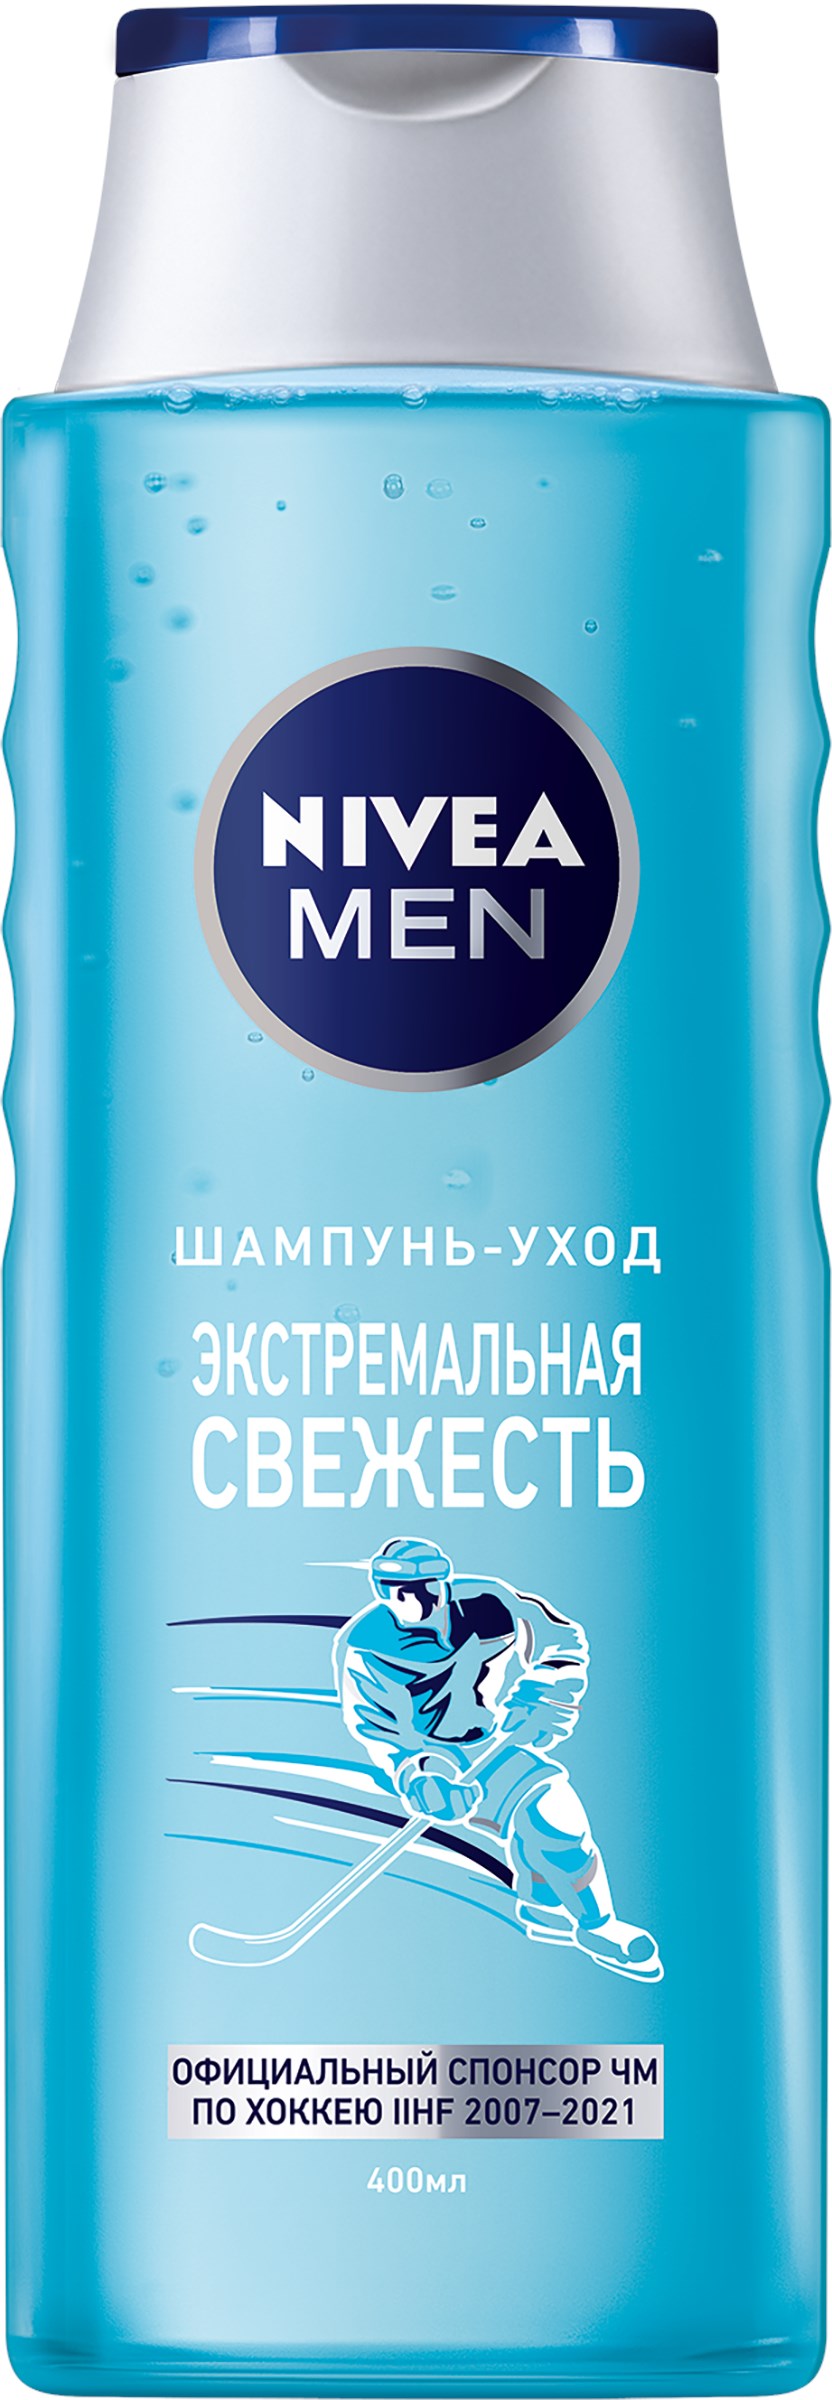 Шампунь для волос мужской NIVEA Экстремальная свежесть, 400мл